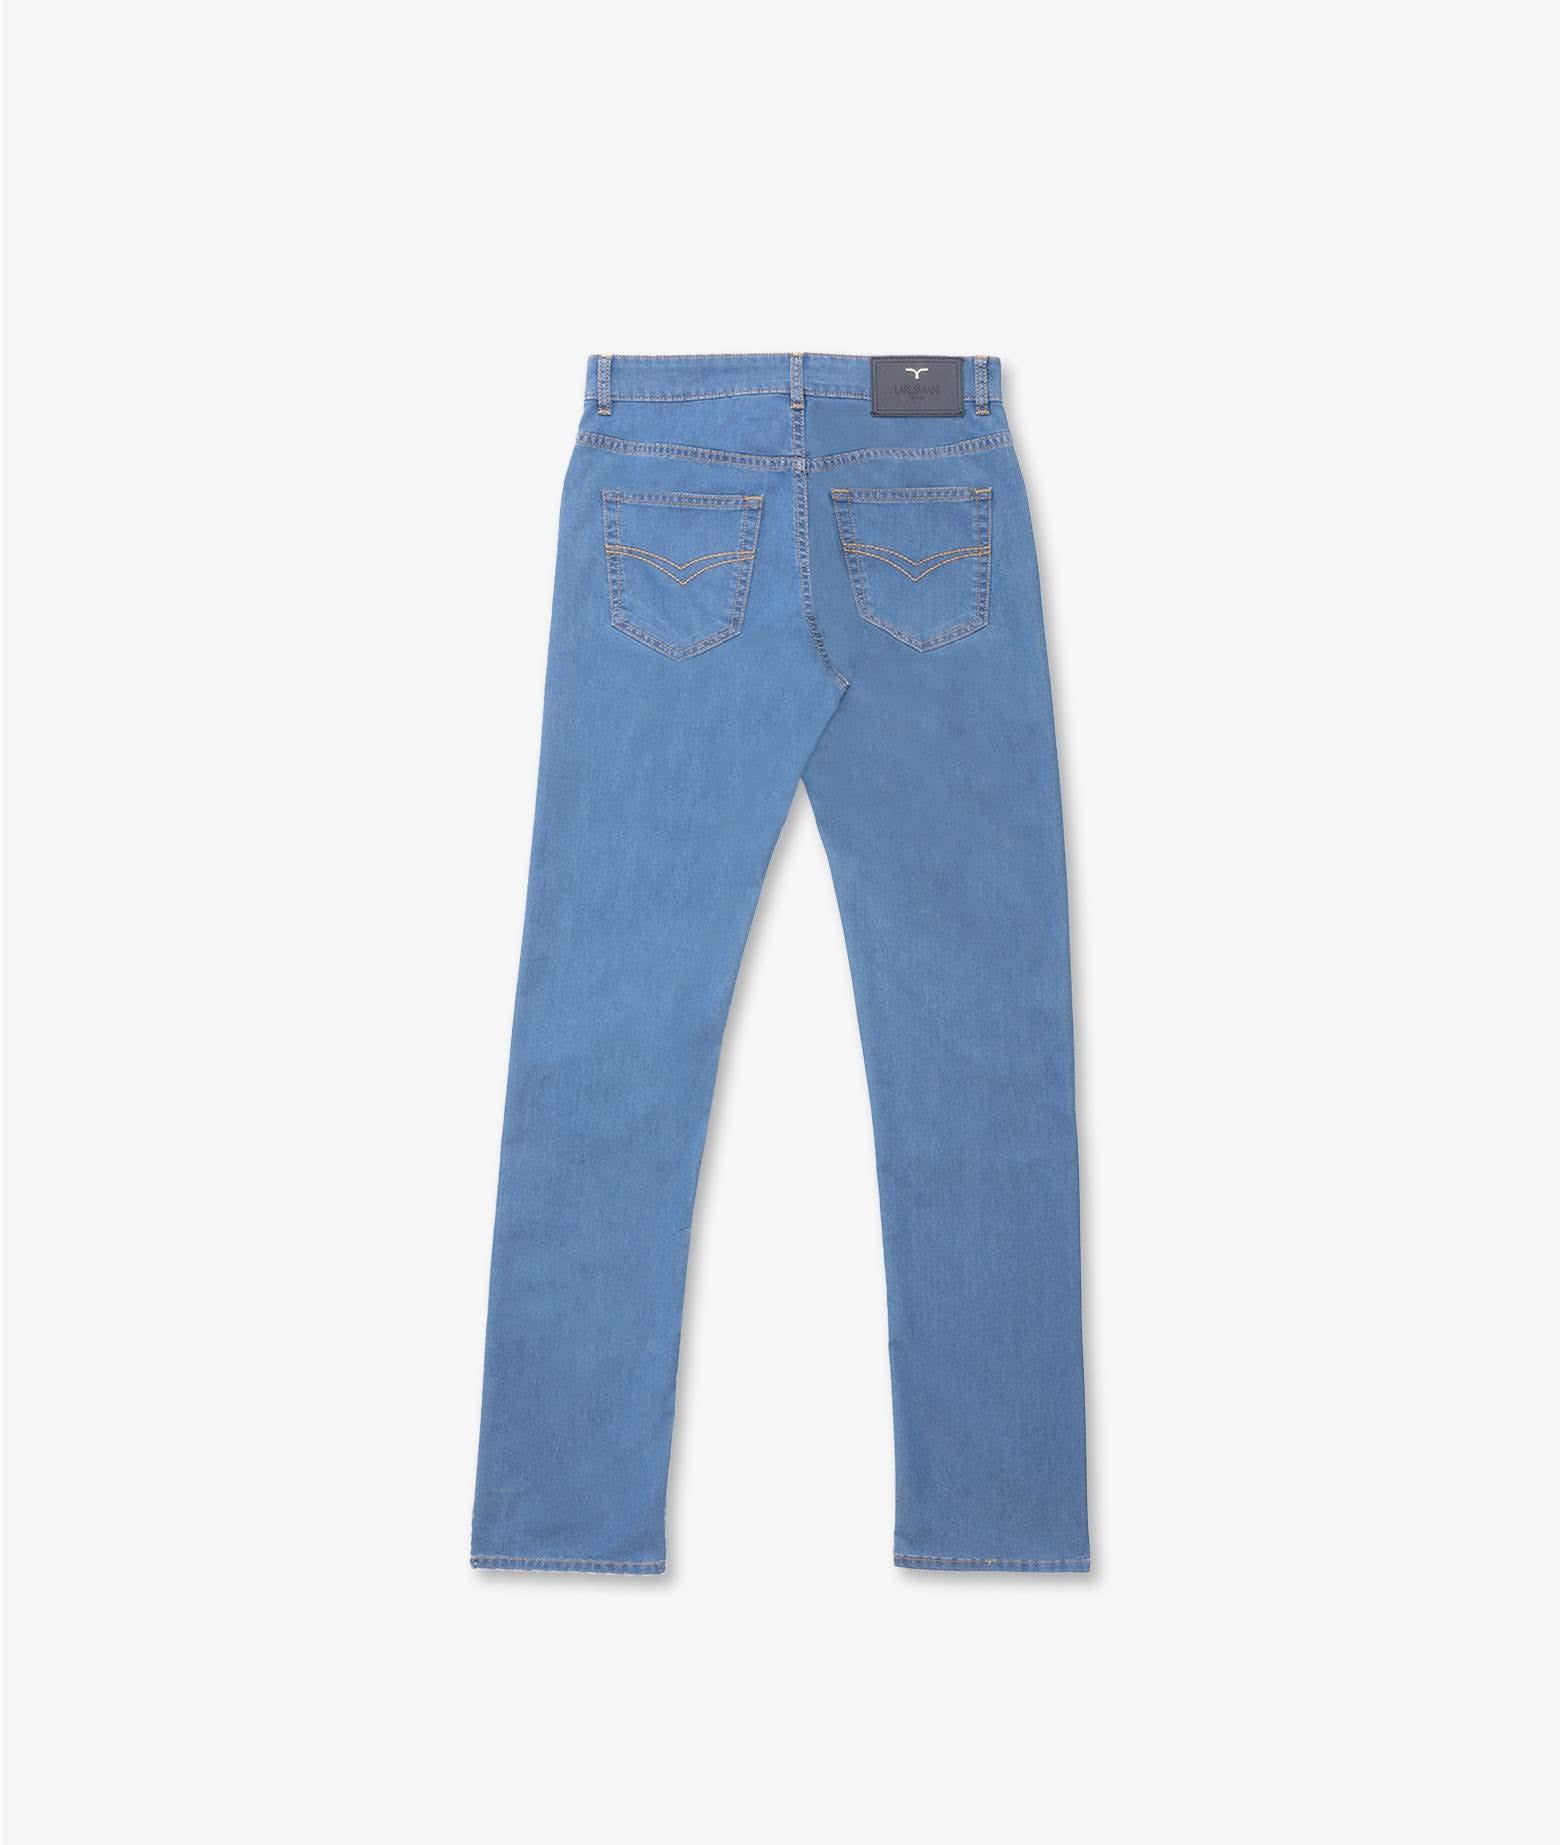 Shop Larusmiani Fuji Trousers Jeans Jeans In Lightblue